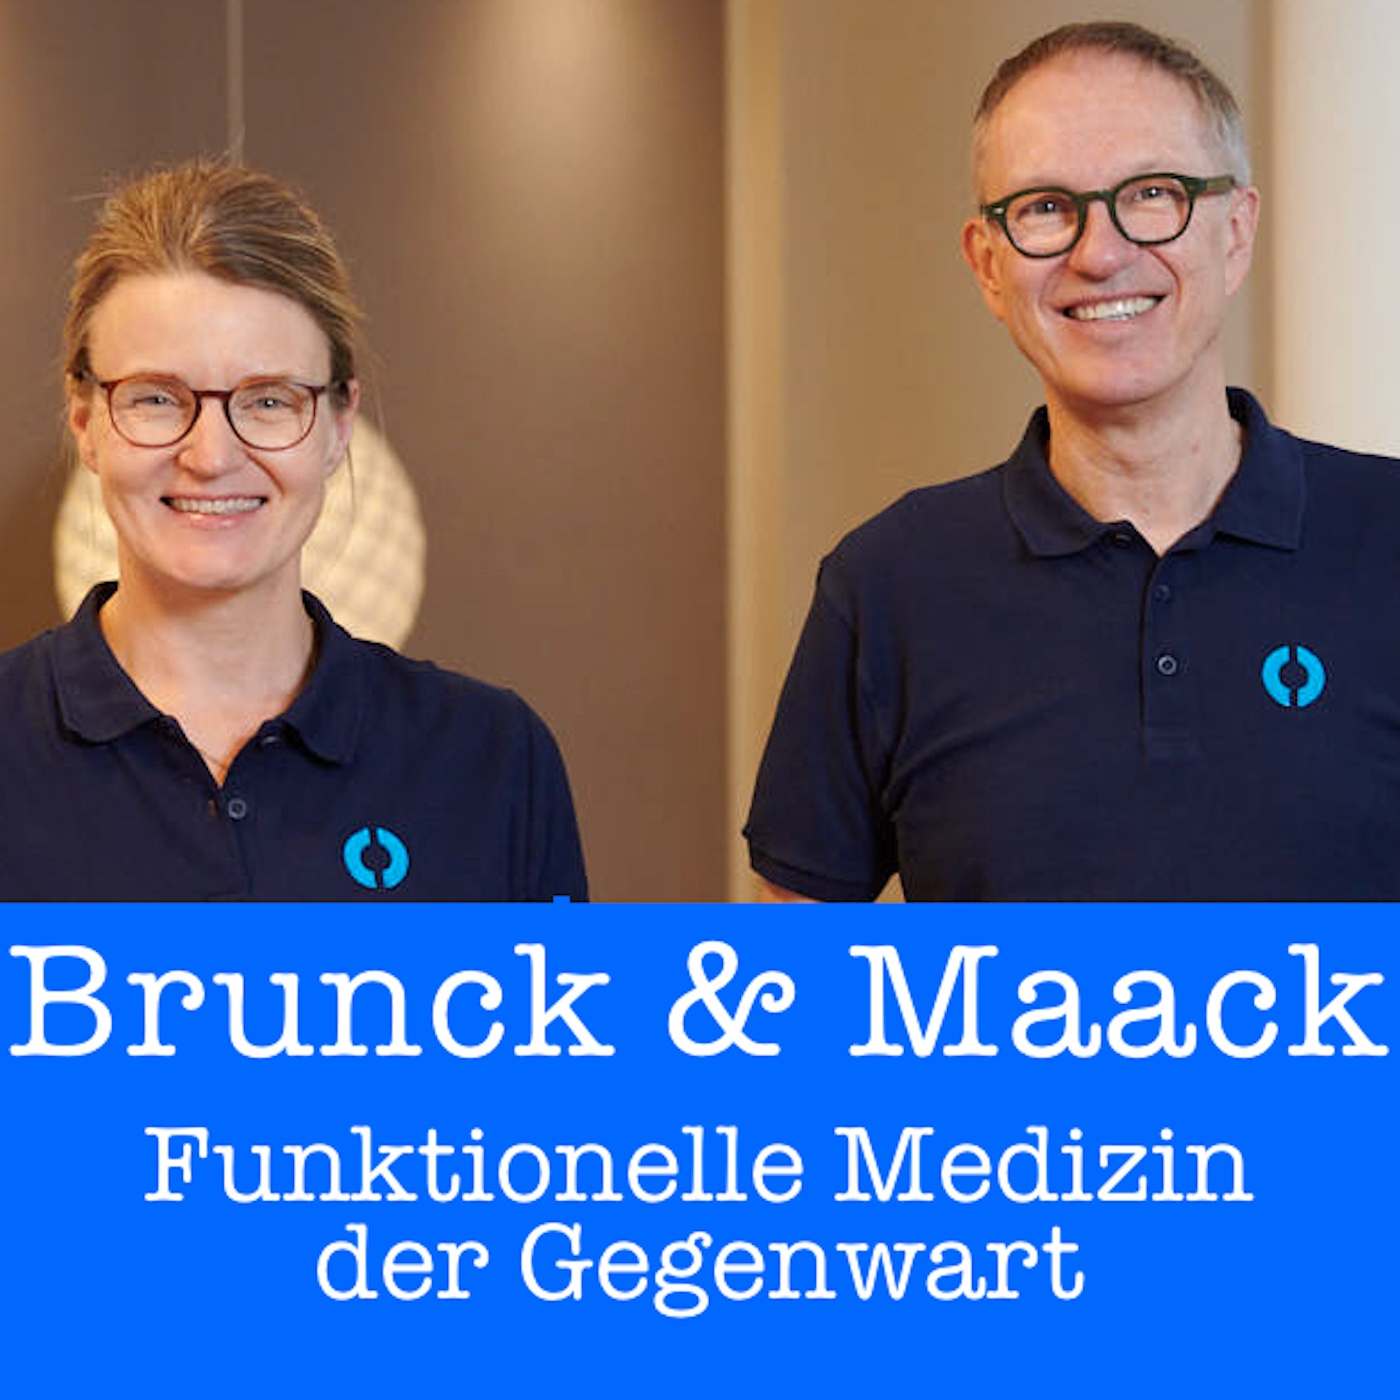 Brunck & Maack: Funktionelle Medizin der Gegenwart